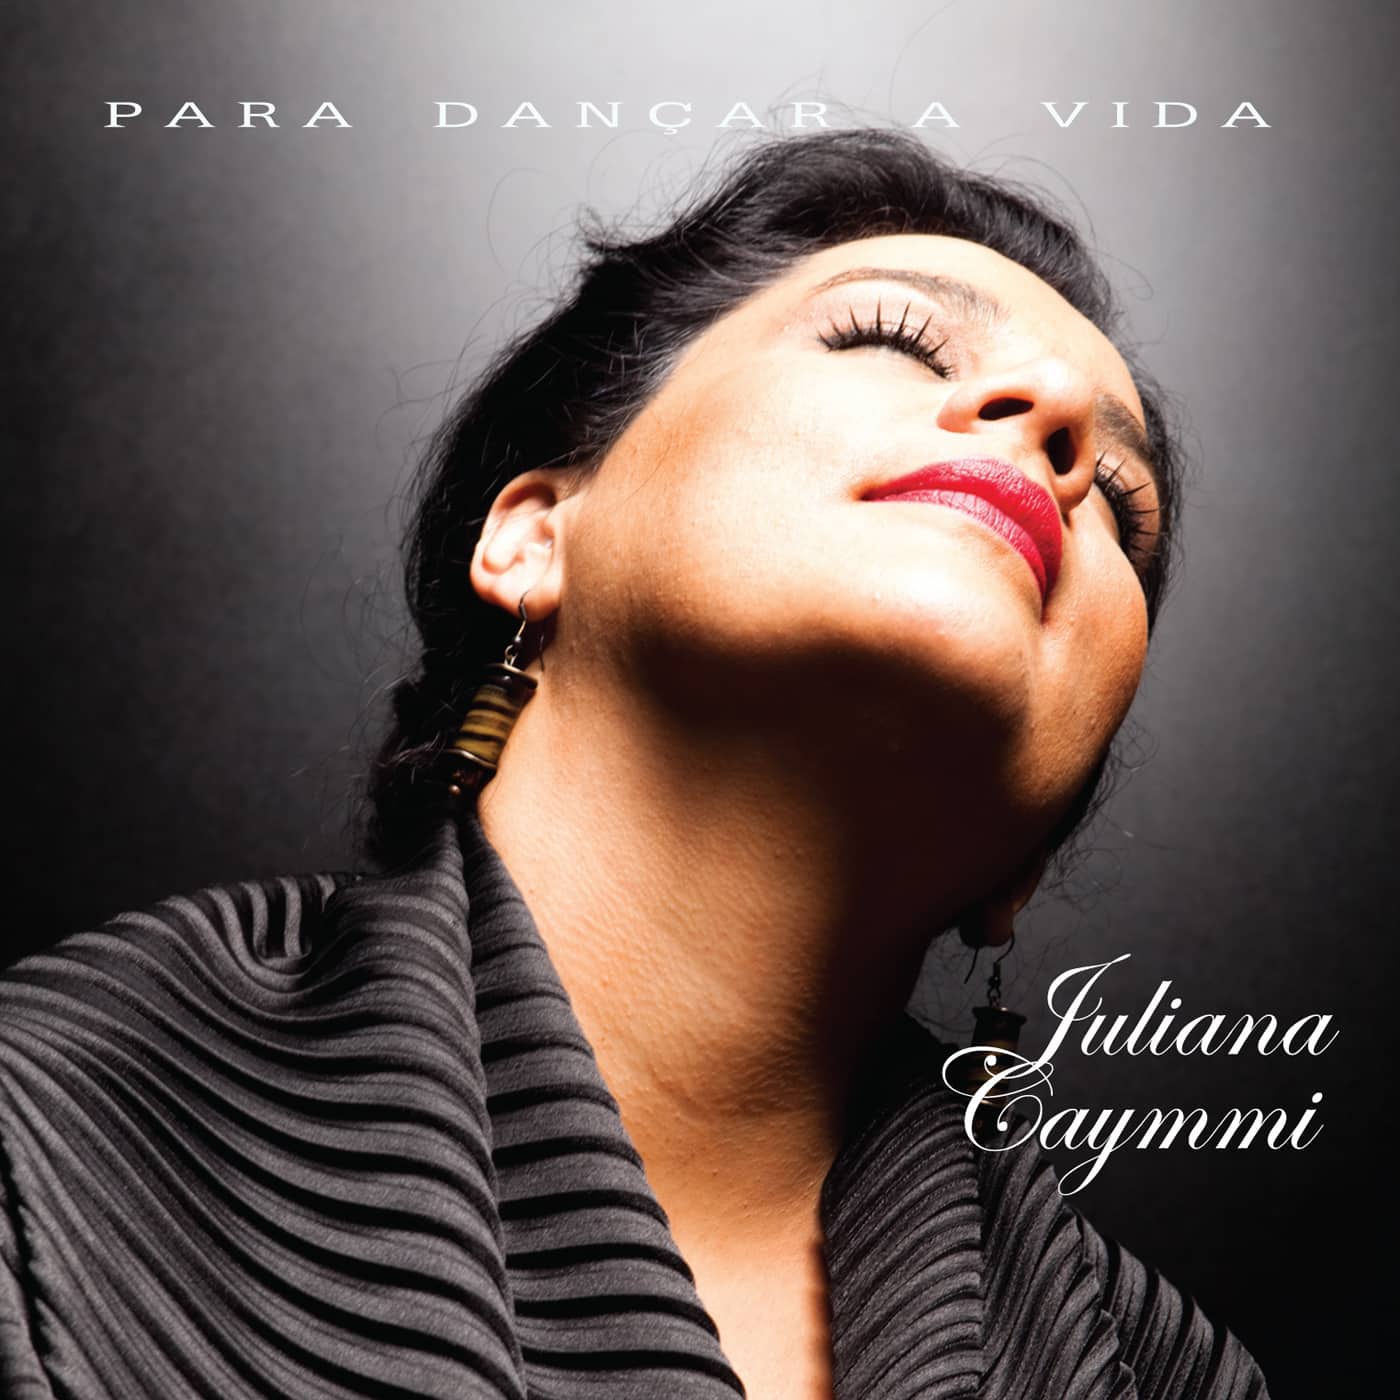 revistaprosaversoearte.com - 'Para dançar a vida', álbum da cantora e compositora Juliana Caymmi, chega as plataformas de música